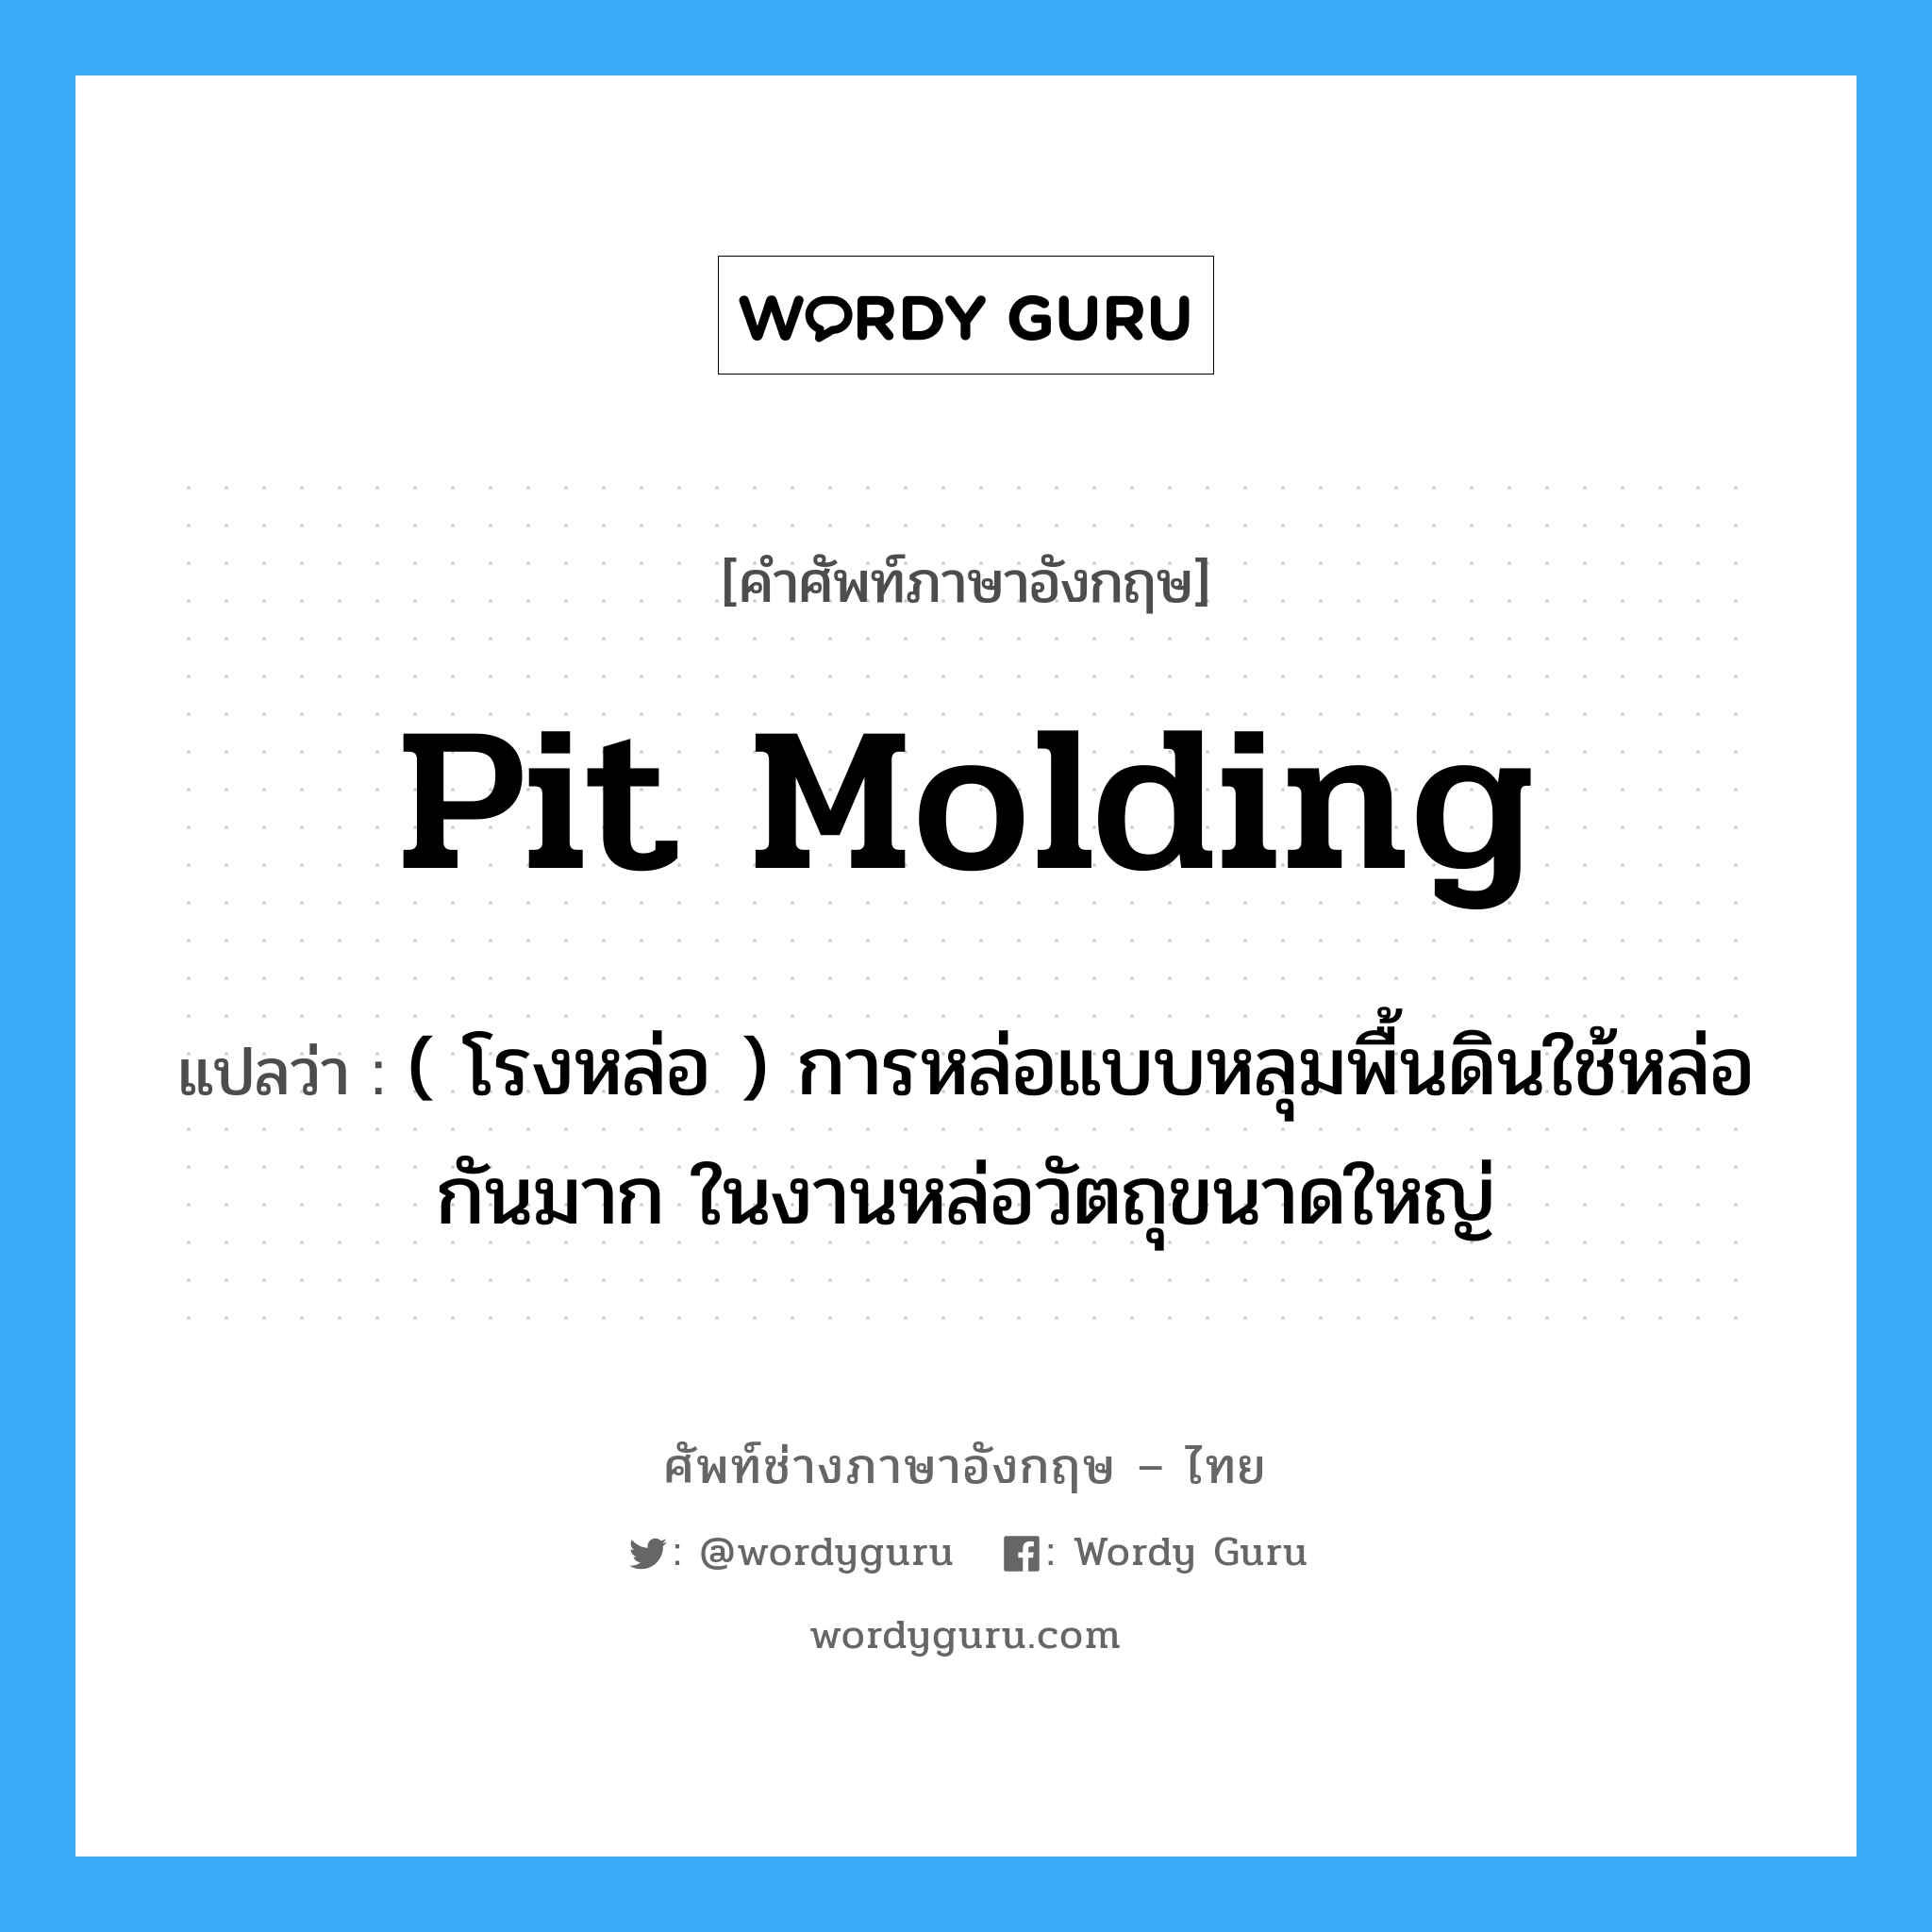 pit molding แปลว่า?, คำศัพท์ช่างภาษาอังกฤษ - ไทย pit molding คำศัพท์ภาษาอังกฤษ pit molding แปลว่า ( โรงหล่อ ) การหล่อแบบหลุมพื้นดินใช้หล่อกันมาก ในงานหล่อวัตถุขนาดใหญ่